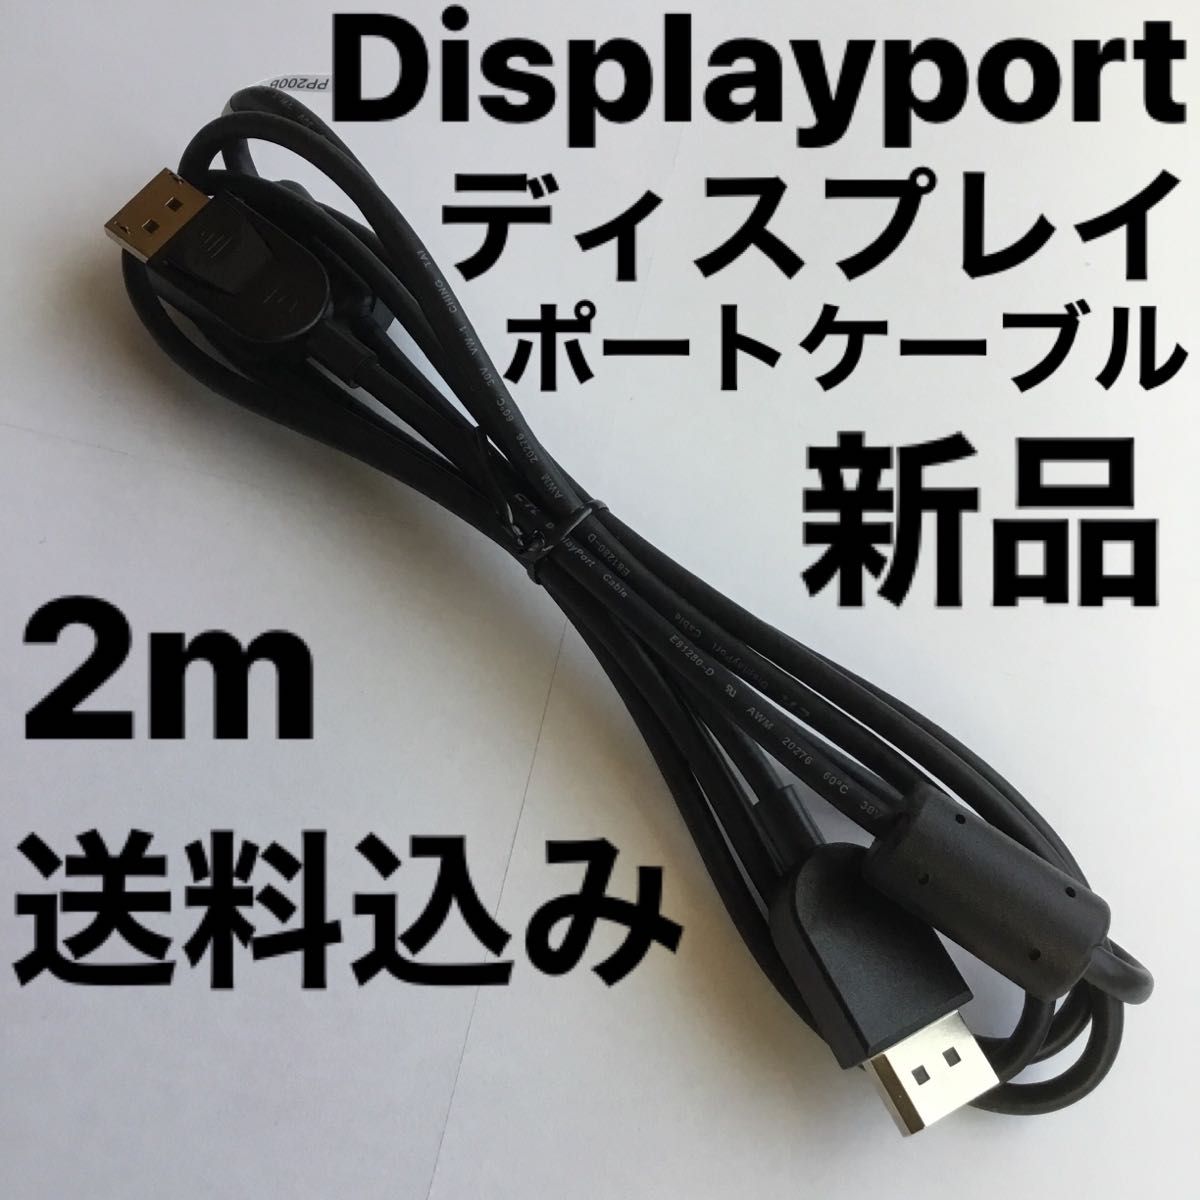 新品Displayport ディスプレイポートケーブル DPケーブル 2m 黒